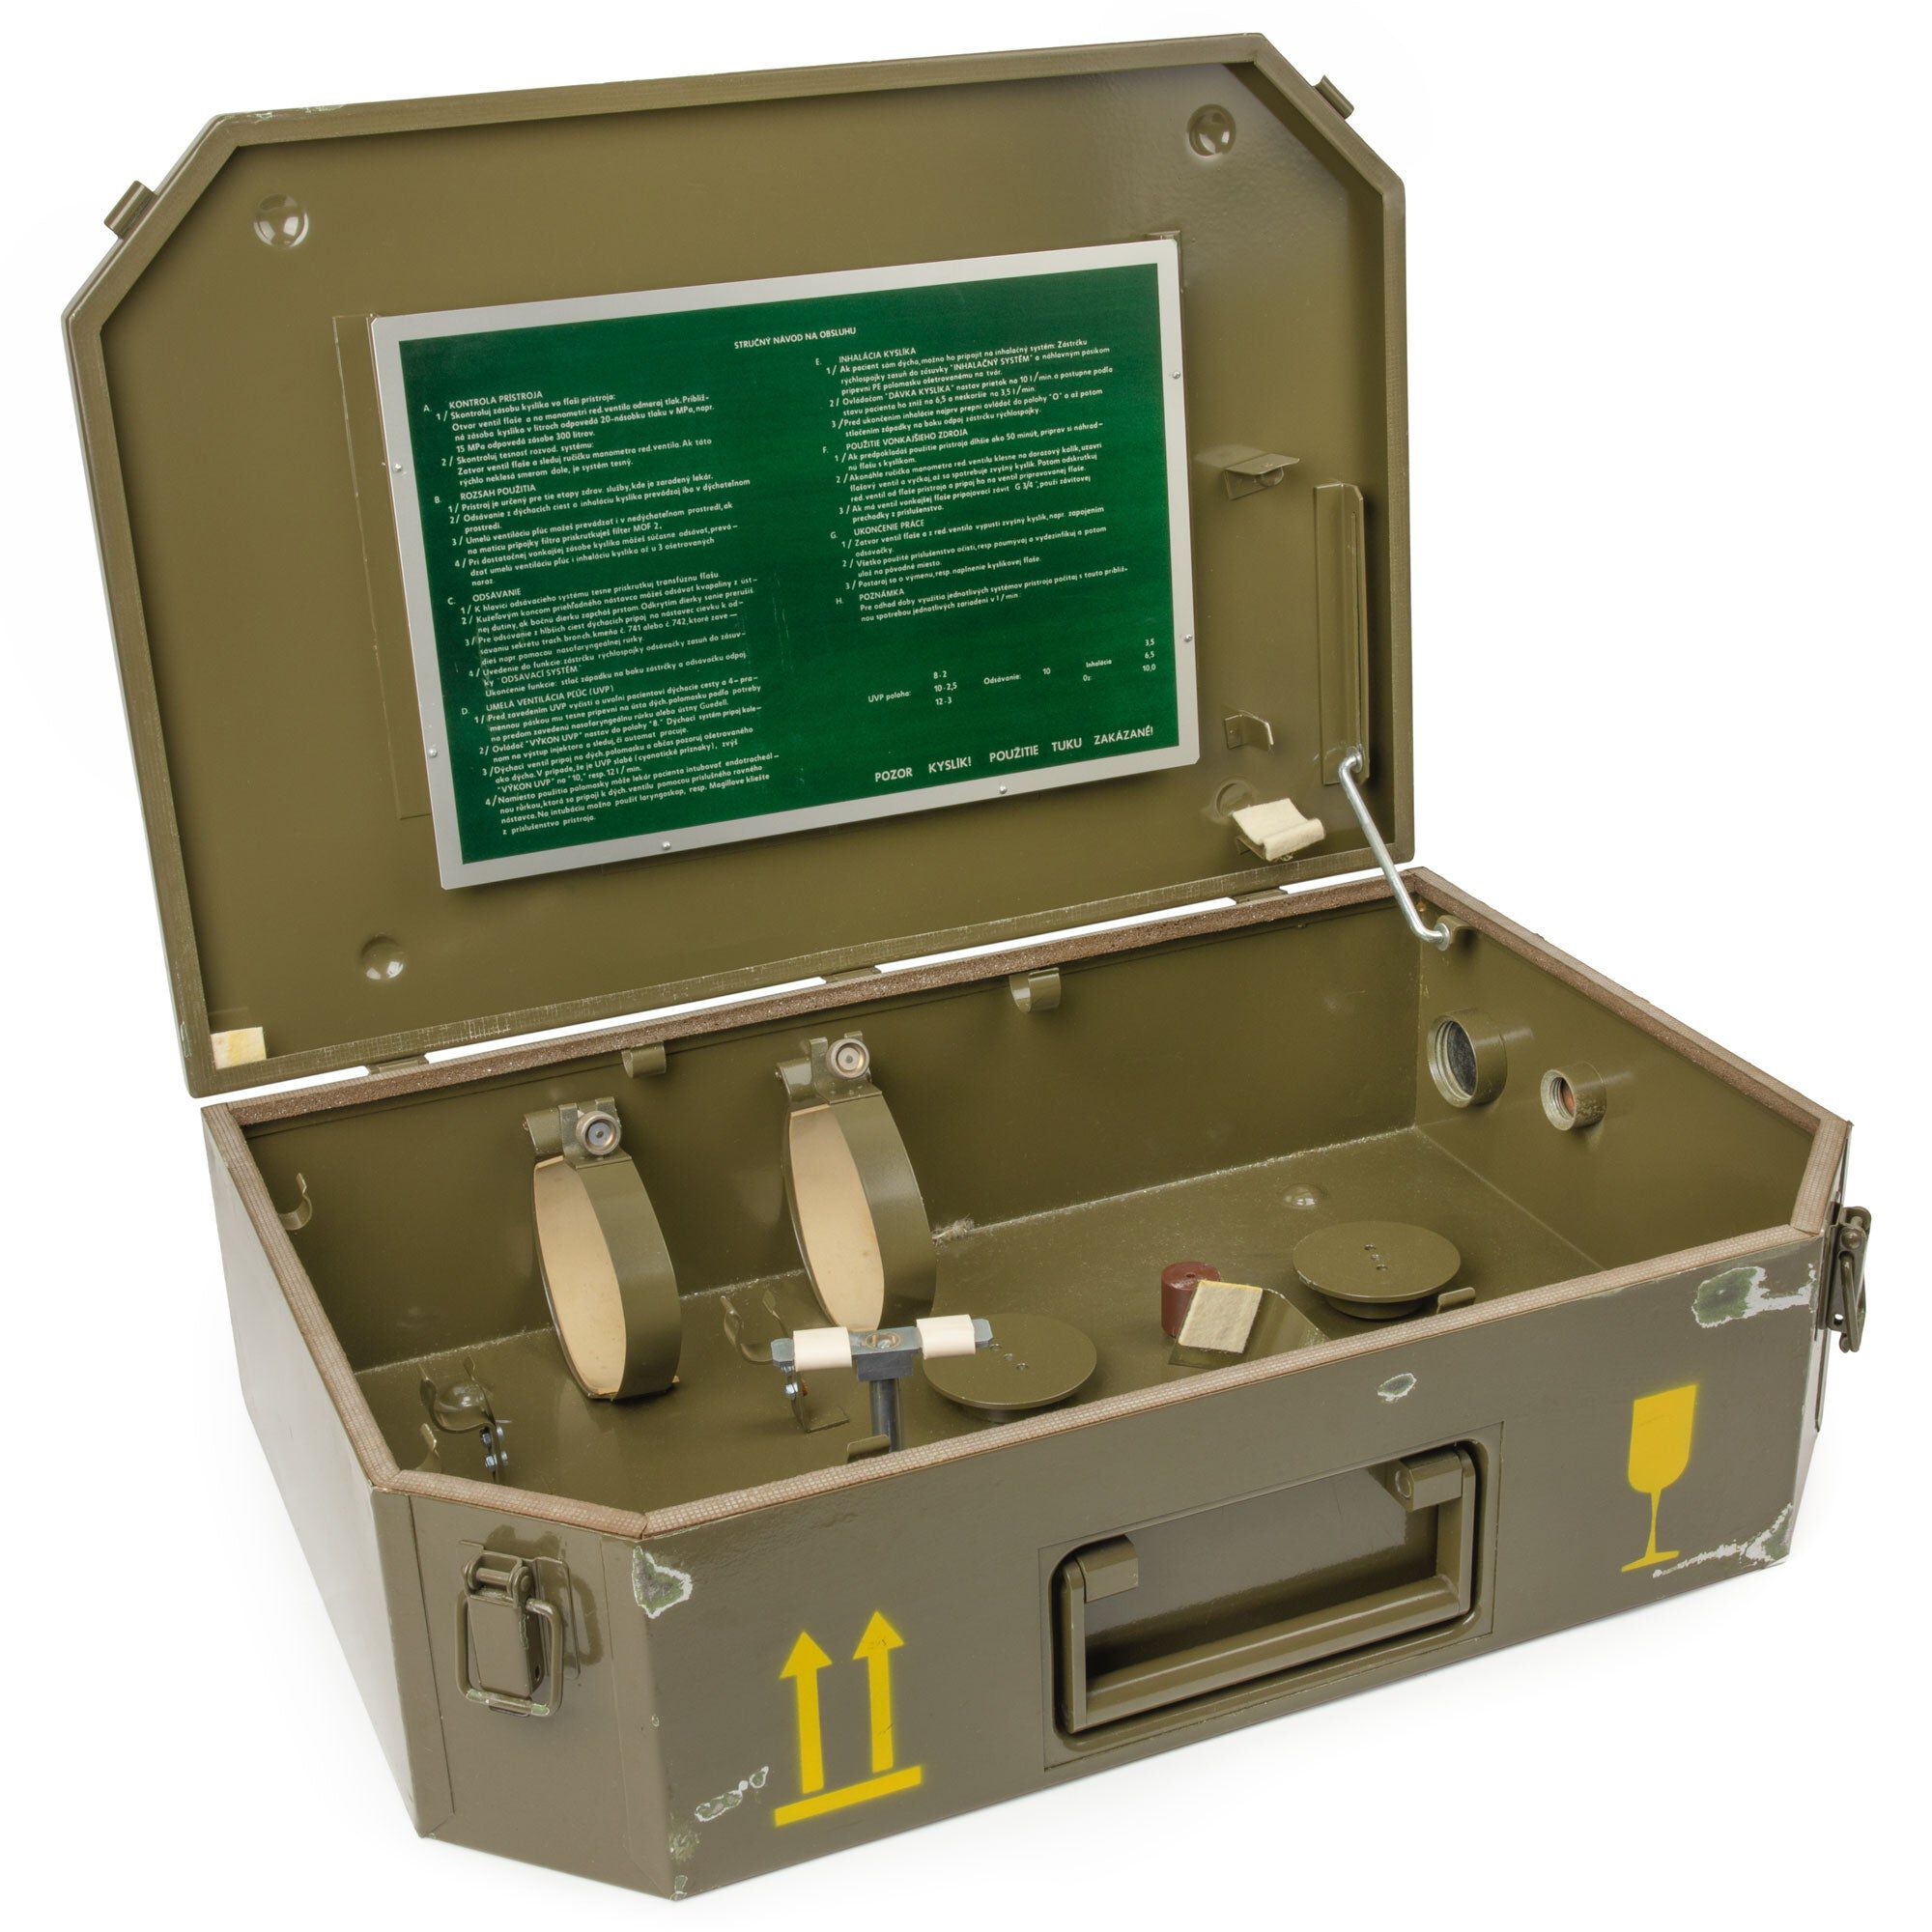 Buy Czech Army Metal Medical Box | Spireta-V for USD 69.99 | Swisslink